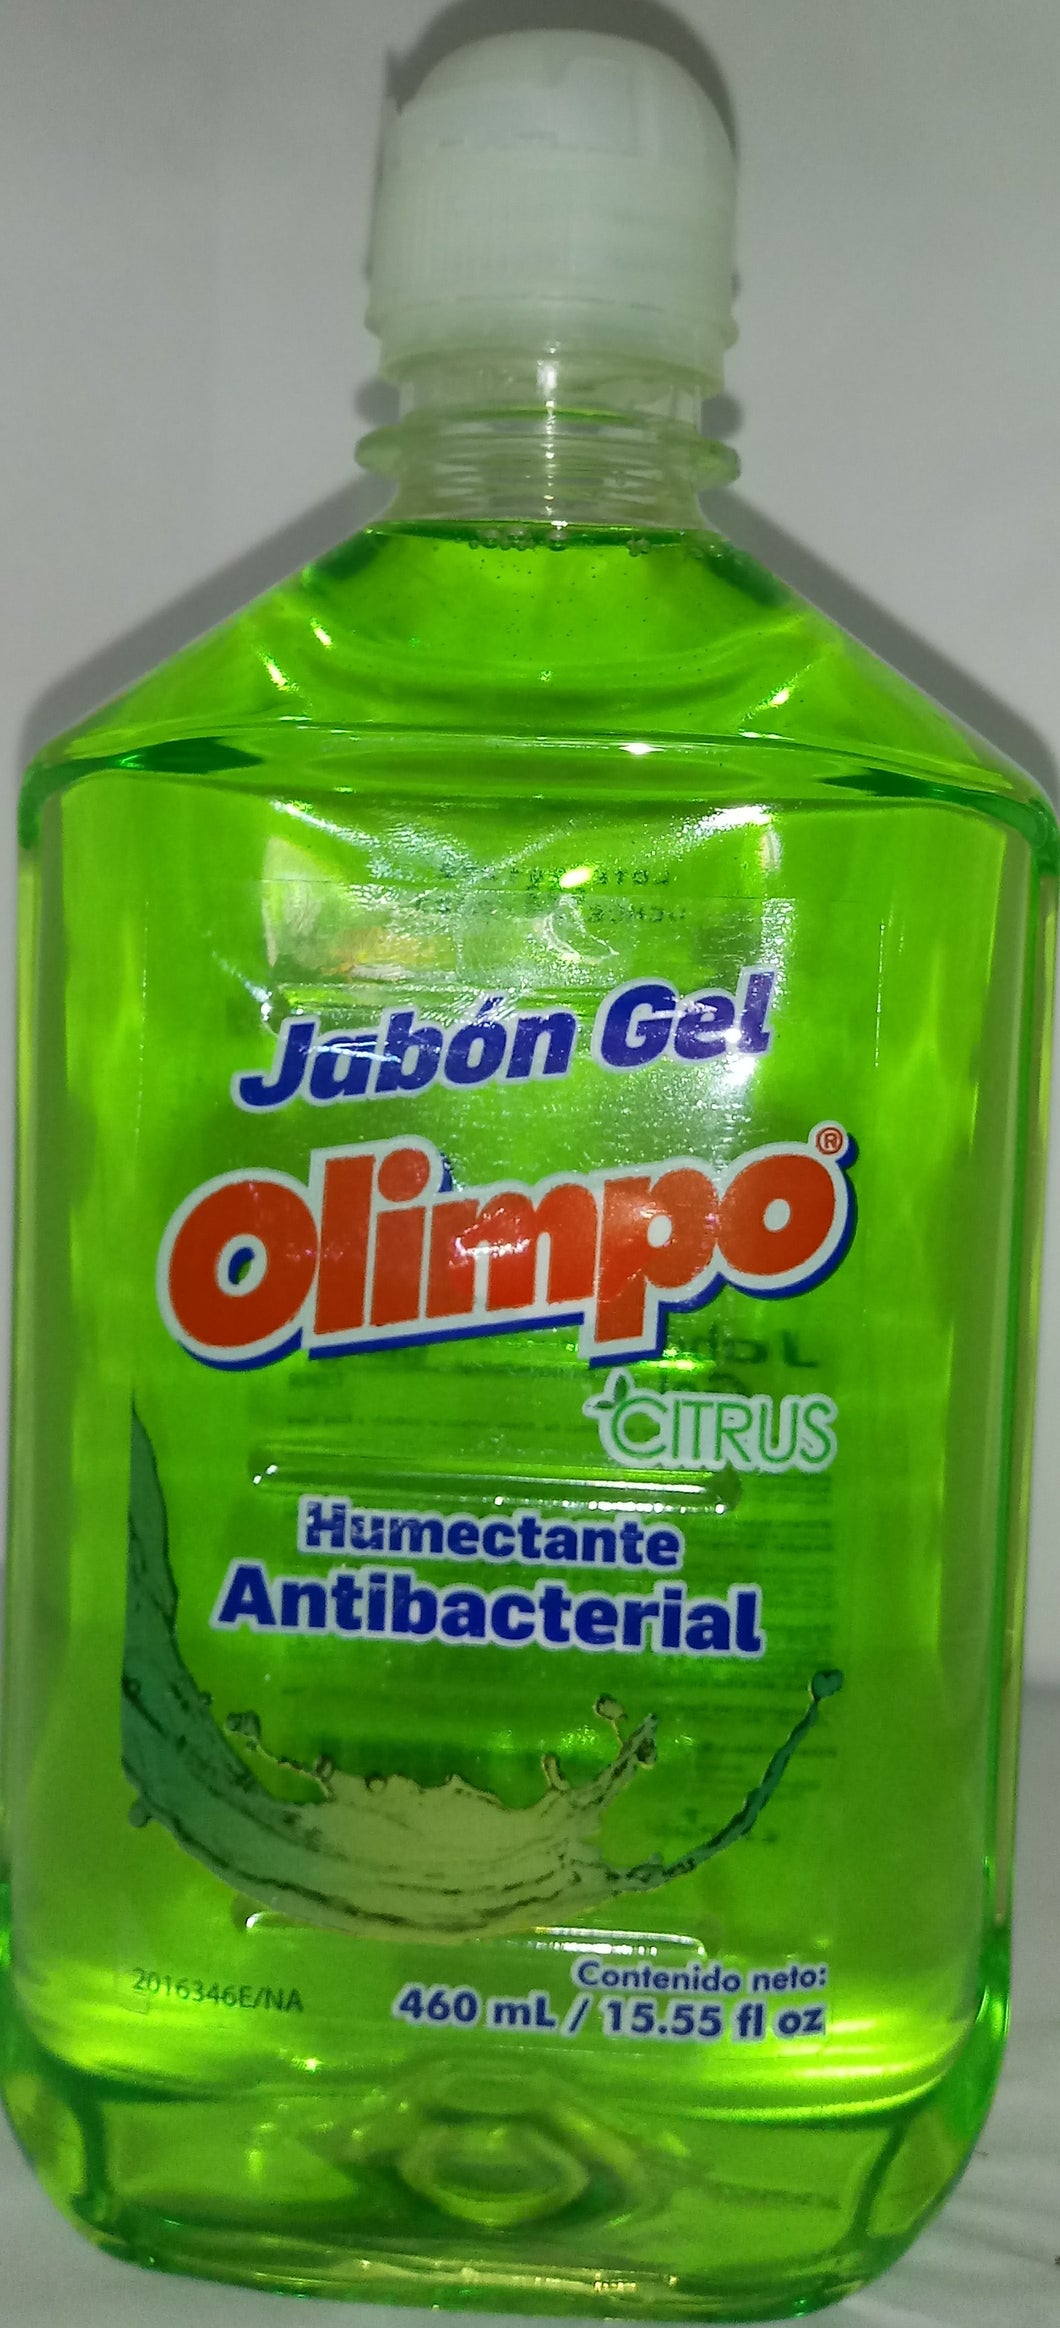 Jabon liquido Olimpo citrus antibacterial 460ml